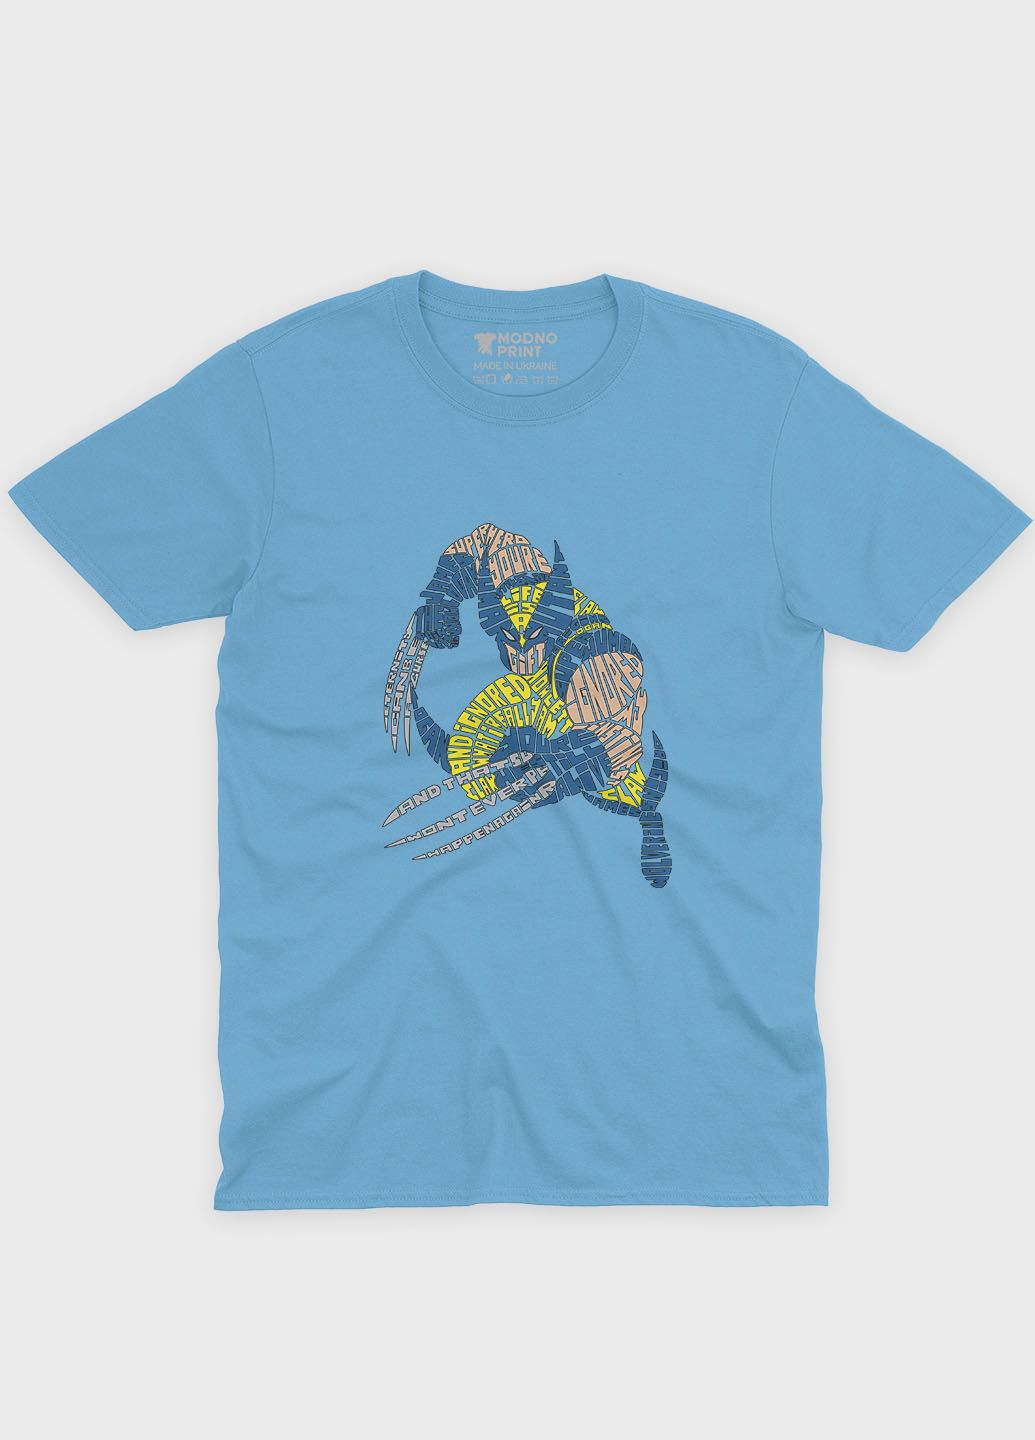 Блакитна демісезонна футболка для дівчинки з принтом супергероя - росомаха (ts001-1-lbl-006-021-001-g) Modno